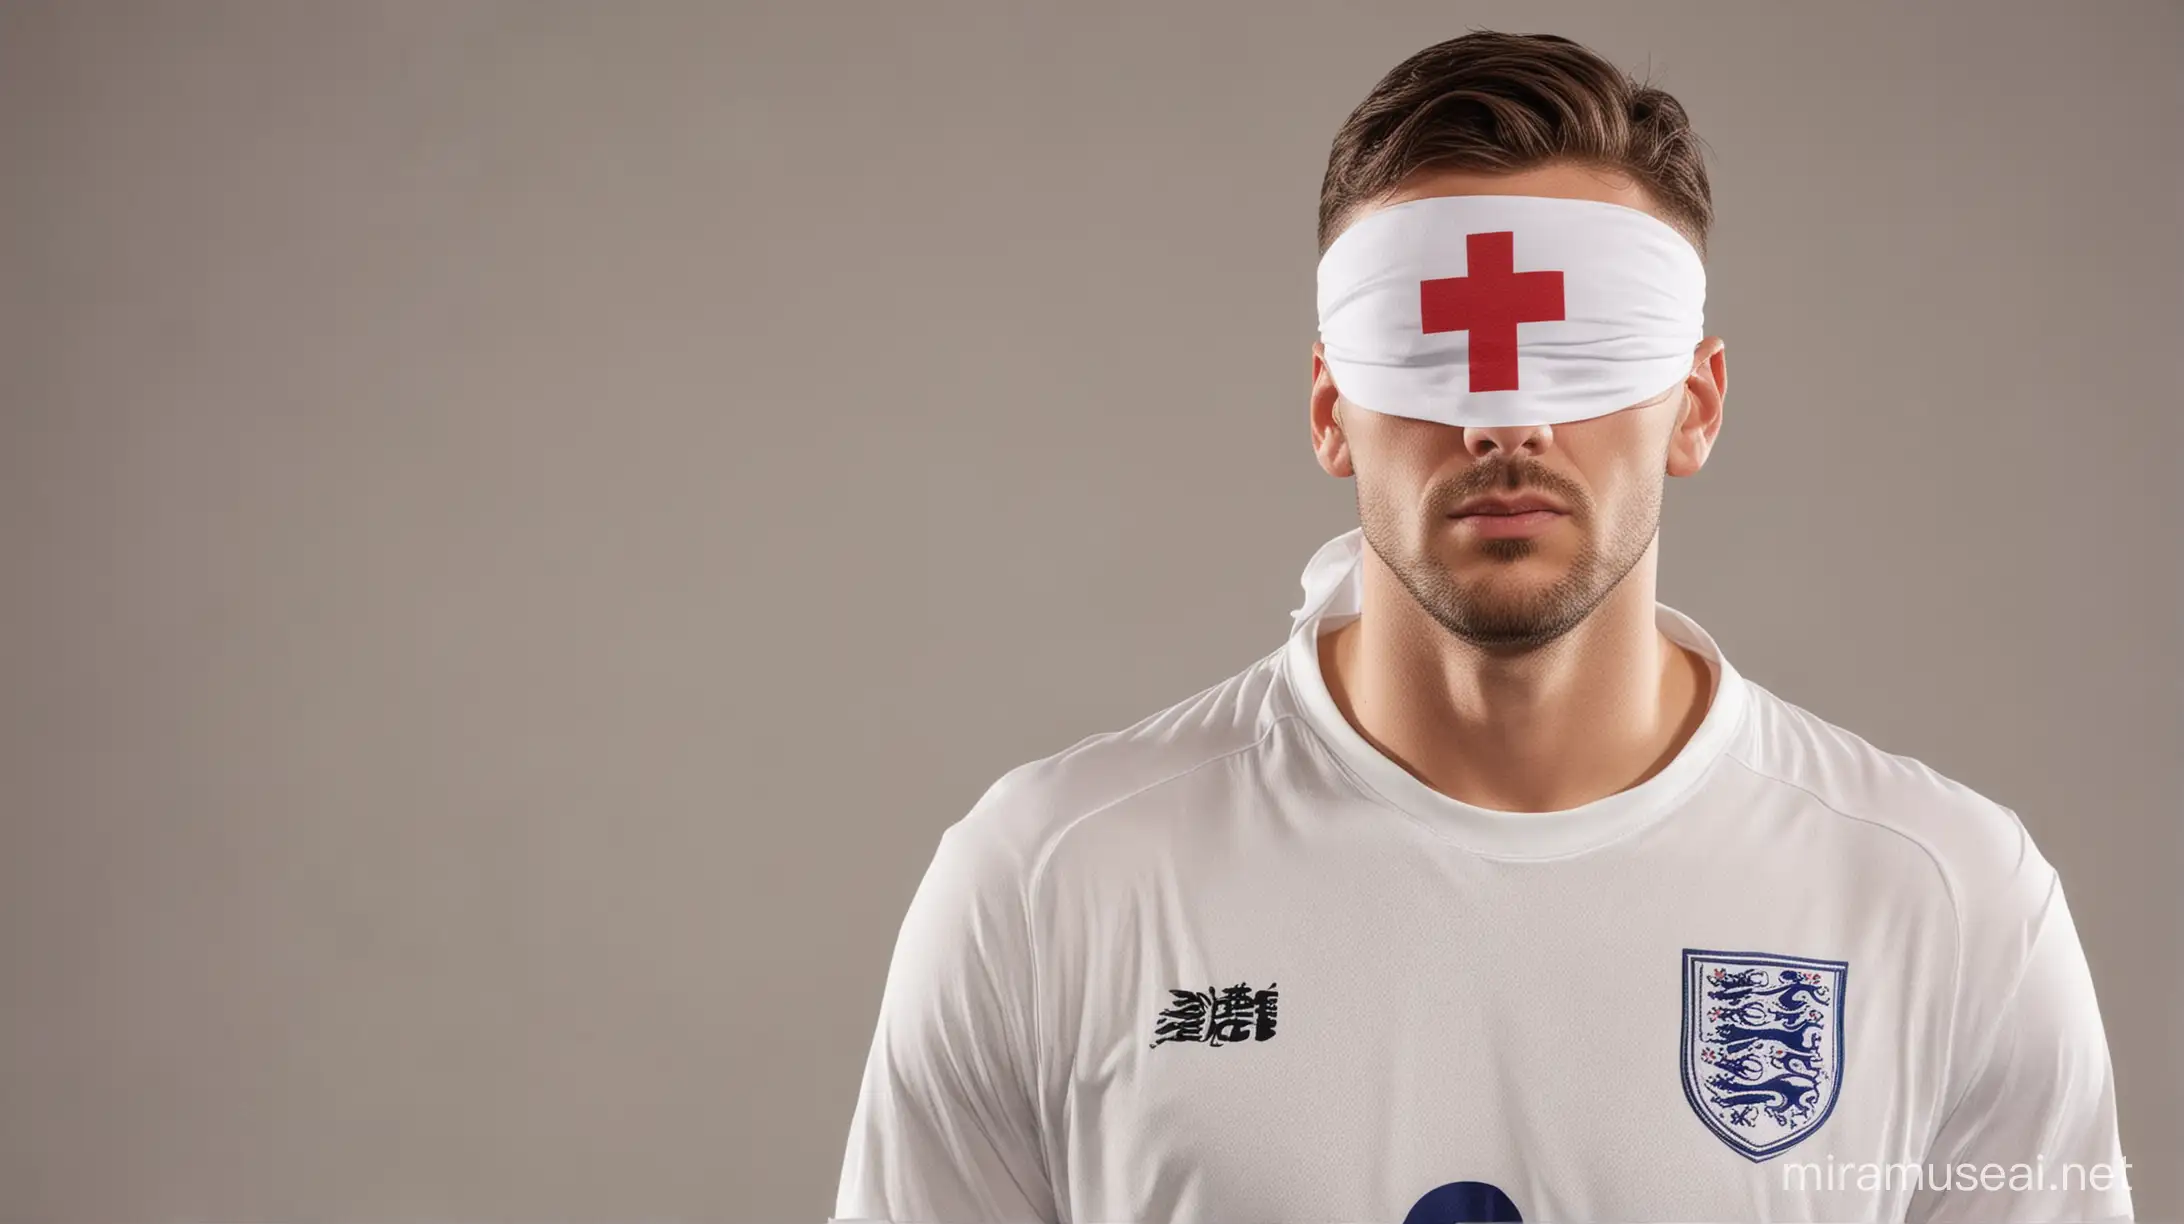 Blindfolded England Football Fan Taking Penalty Kick